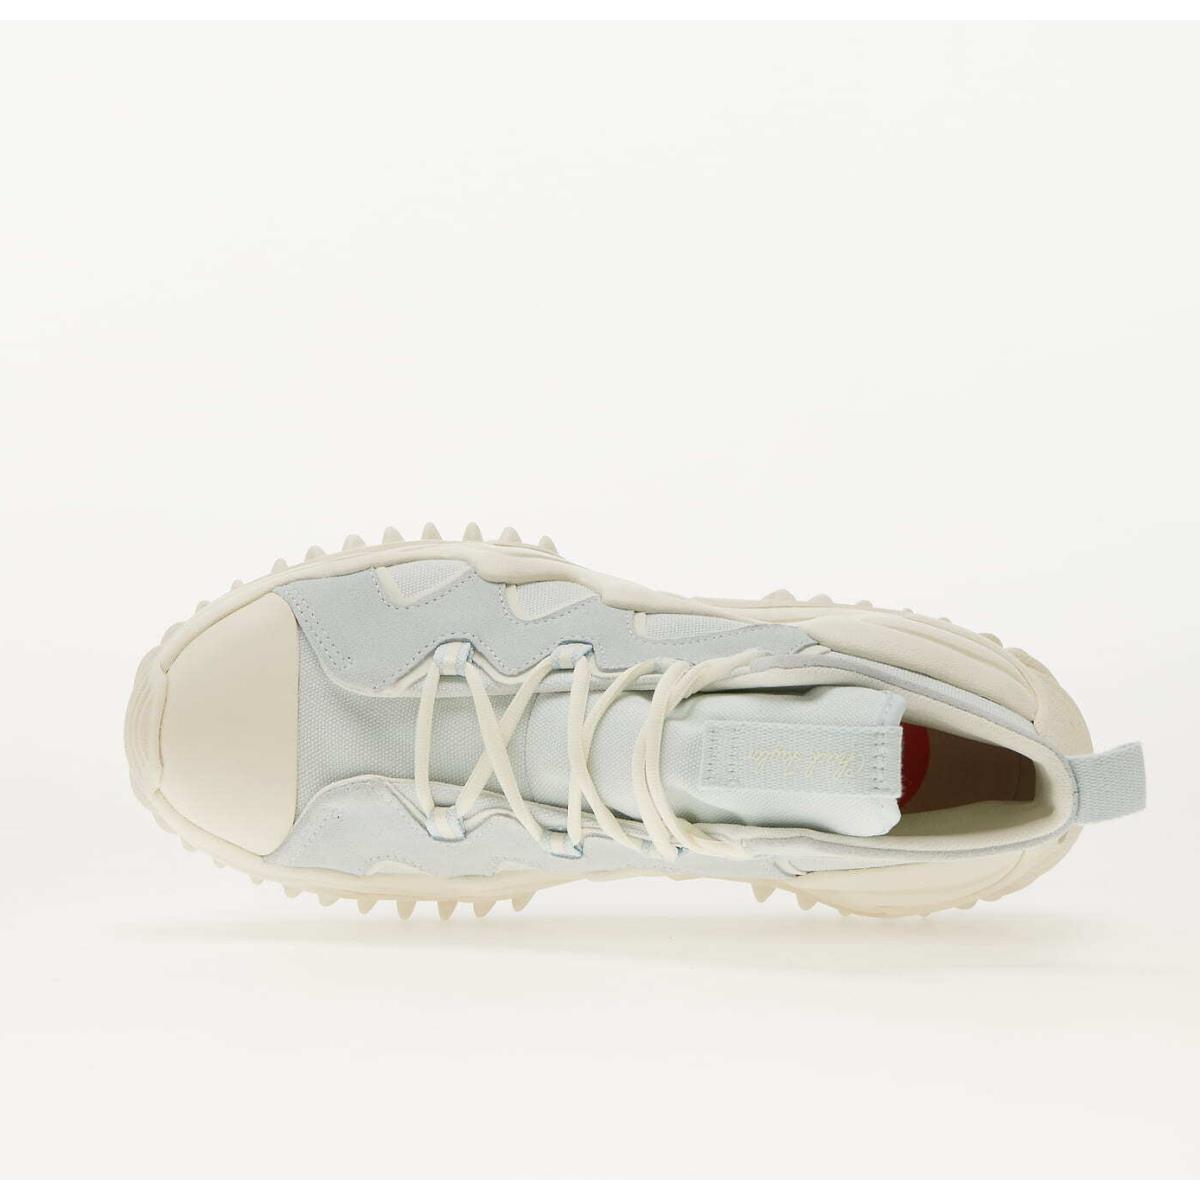 Converse shoes Run Star Motion - Aqua Mist/ Egret/ Egret , Aqua Mist/ Egret/ Egret Manufacturer 1